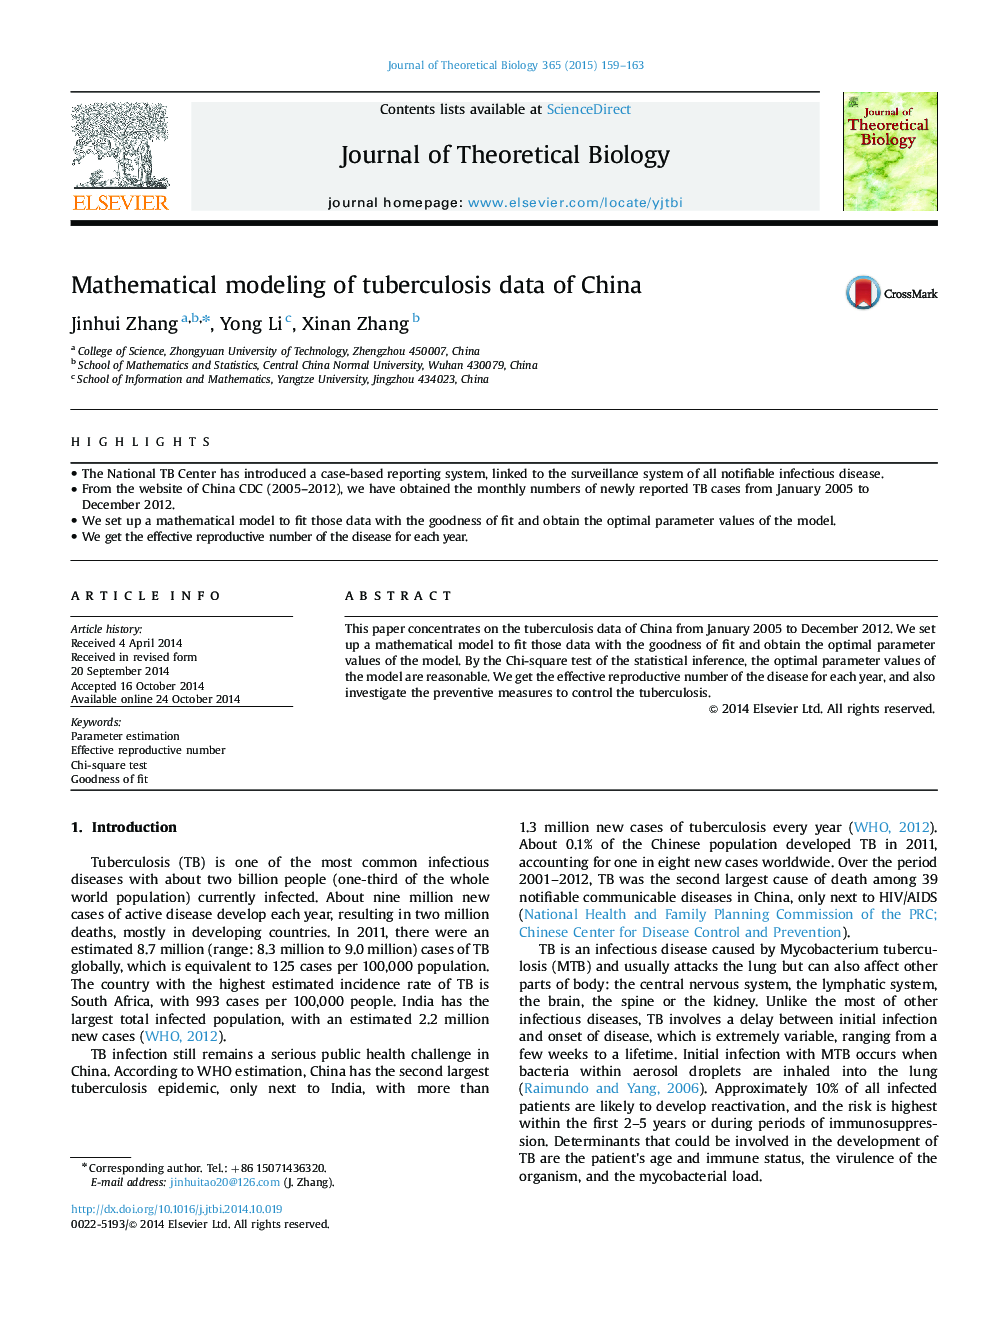 مدل سازی ریاضی اطلاعات سل در چین 